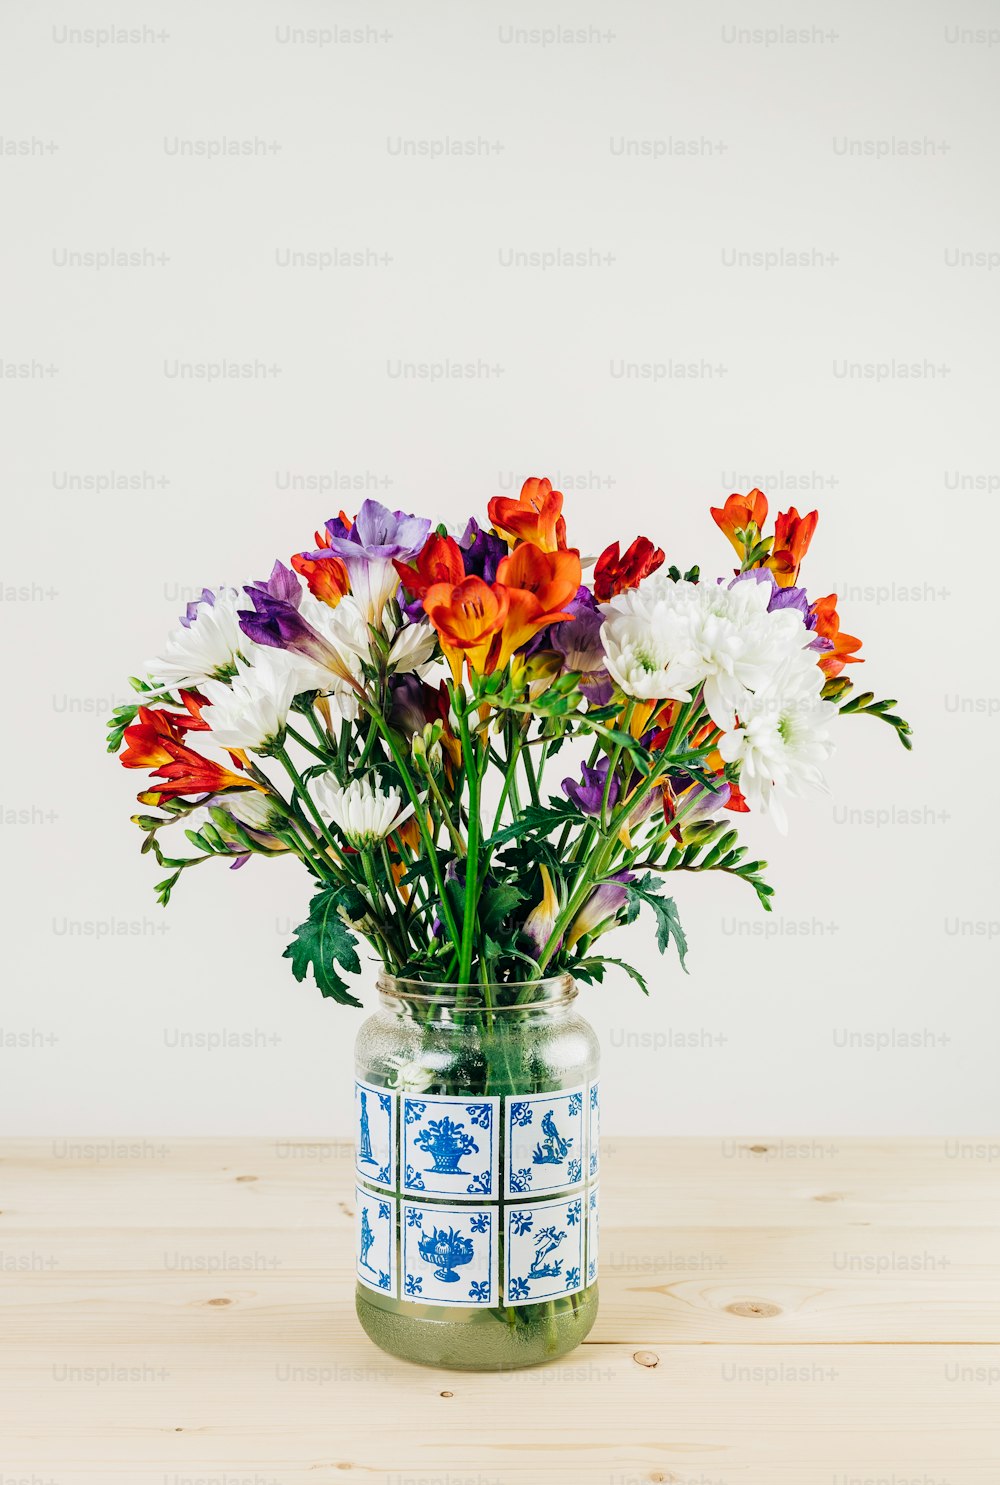 Un jarrón lleno de flores de colores encima de una mesa de madera